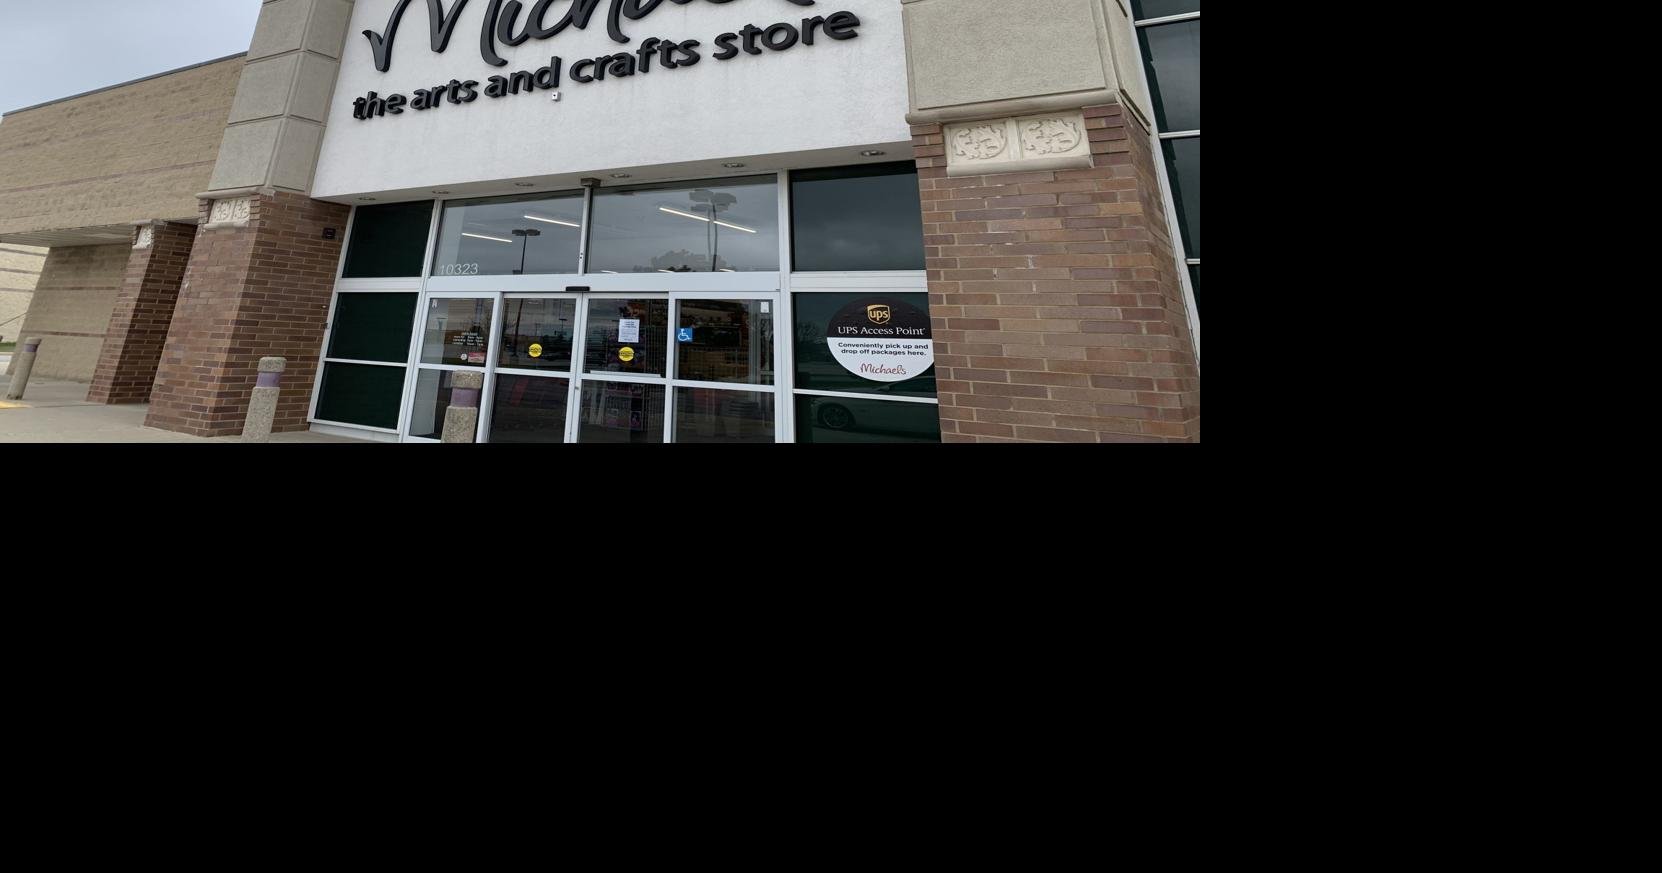 Michaels Craft Store to open in Aiken next year, Aiken Area Business